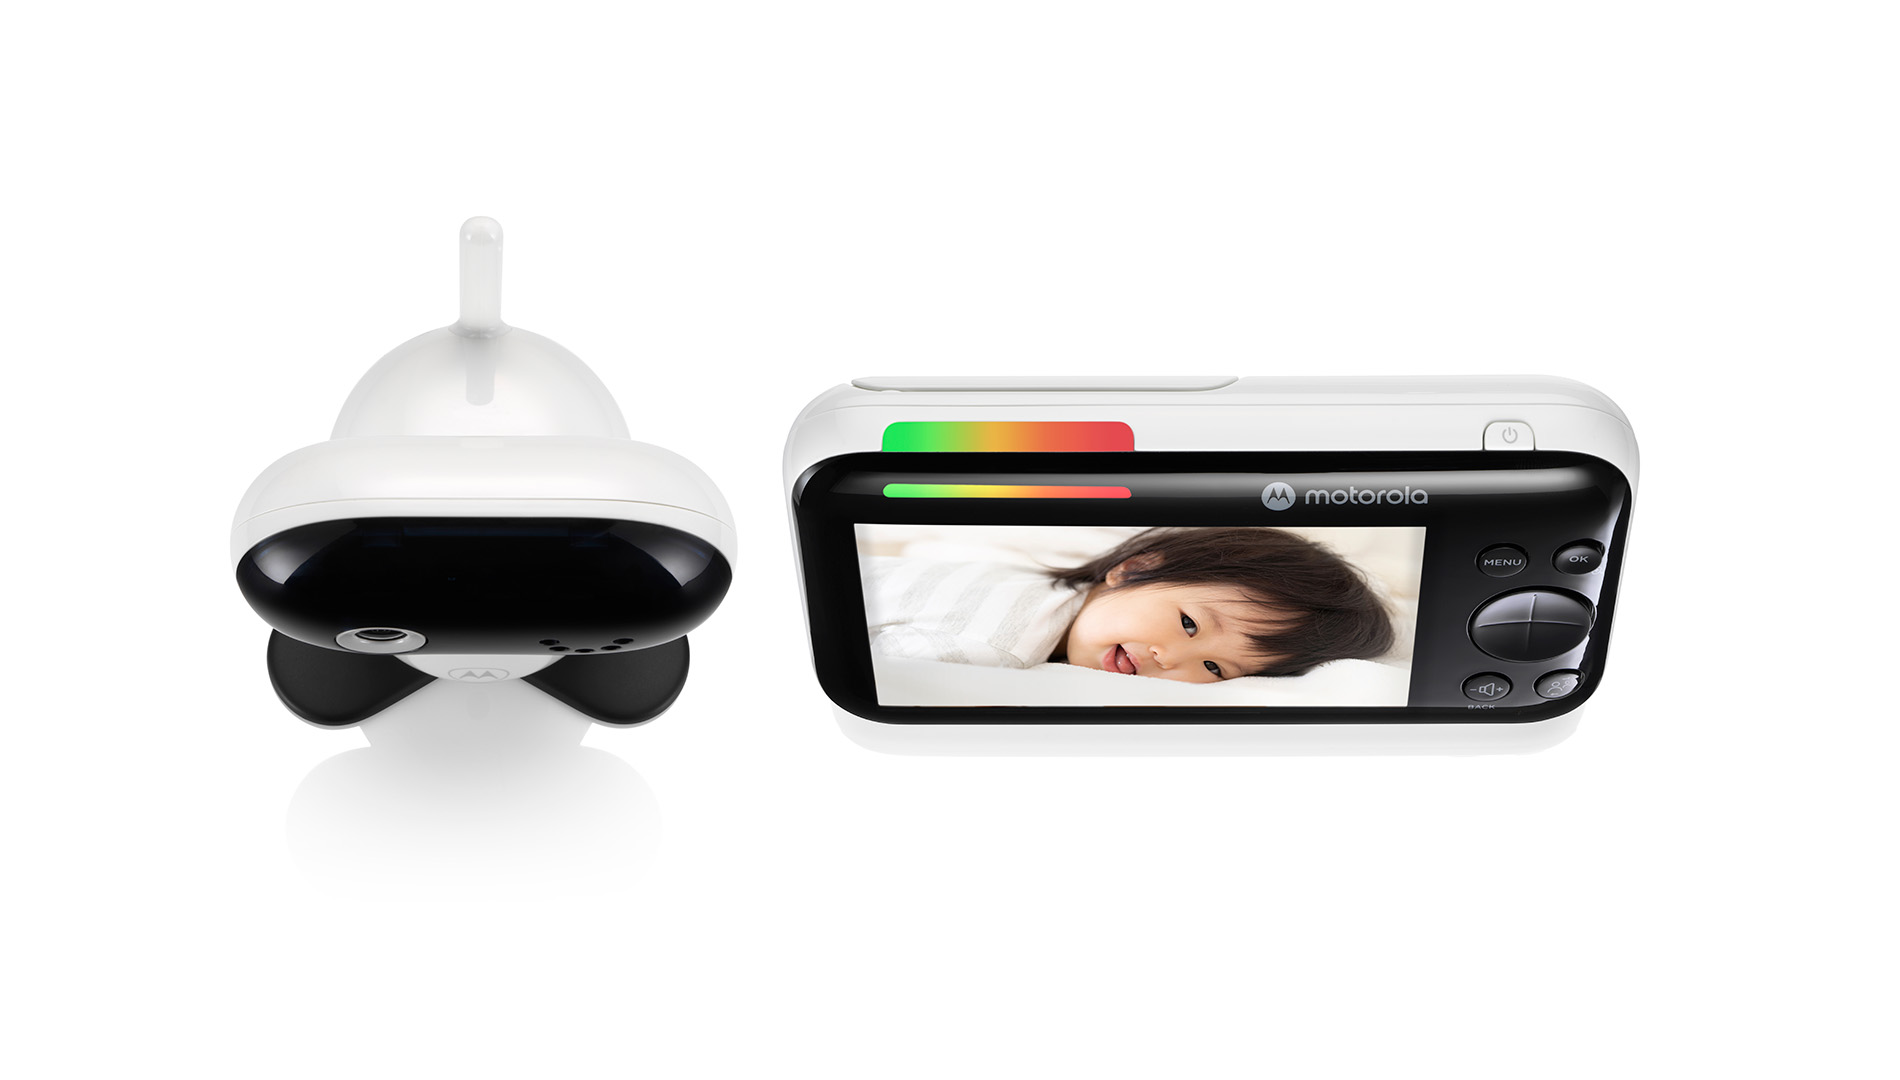 PIP1610 HD - camera and monitor - product image